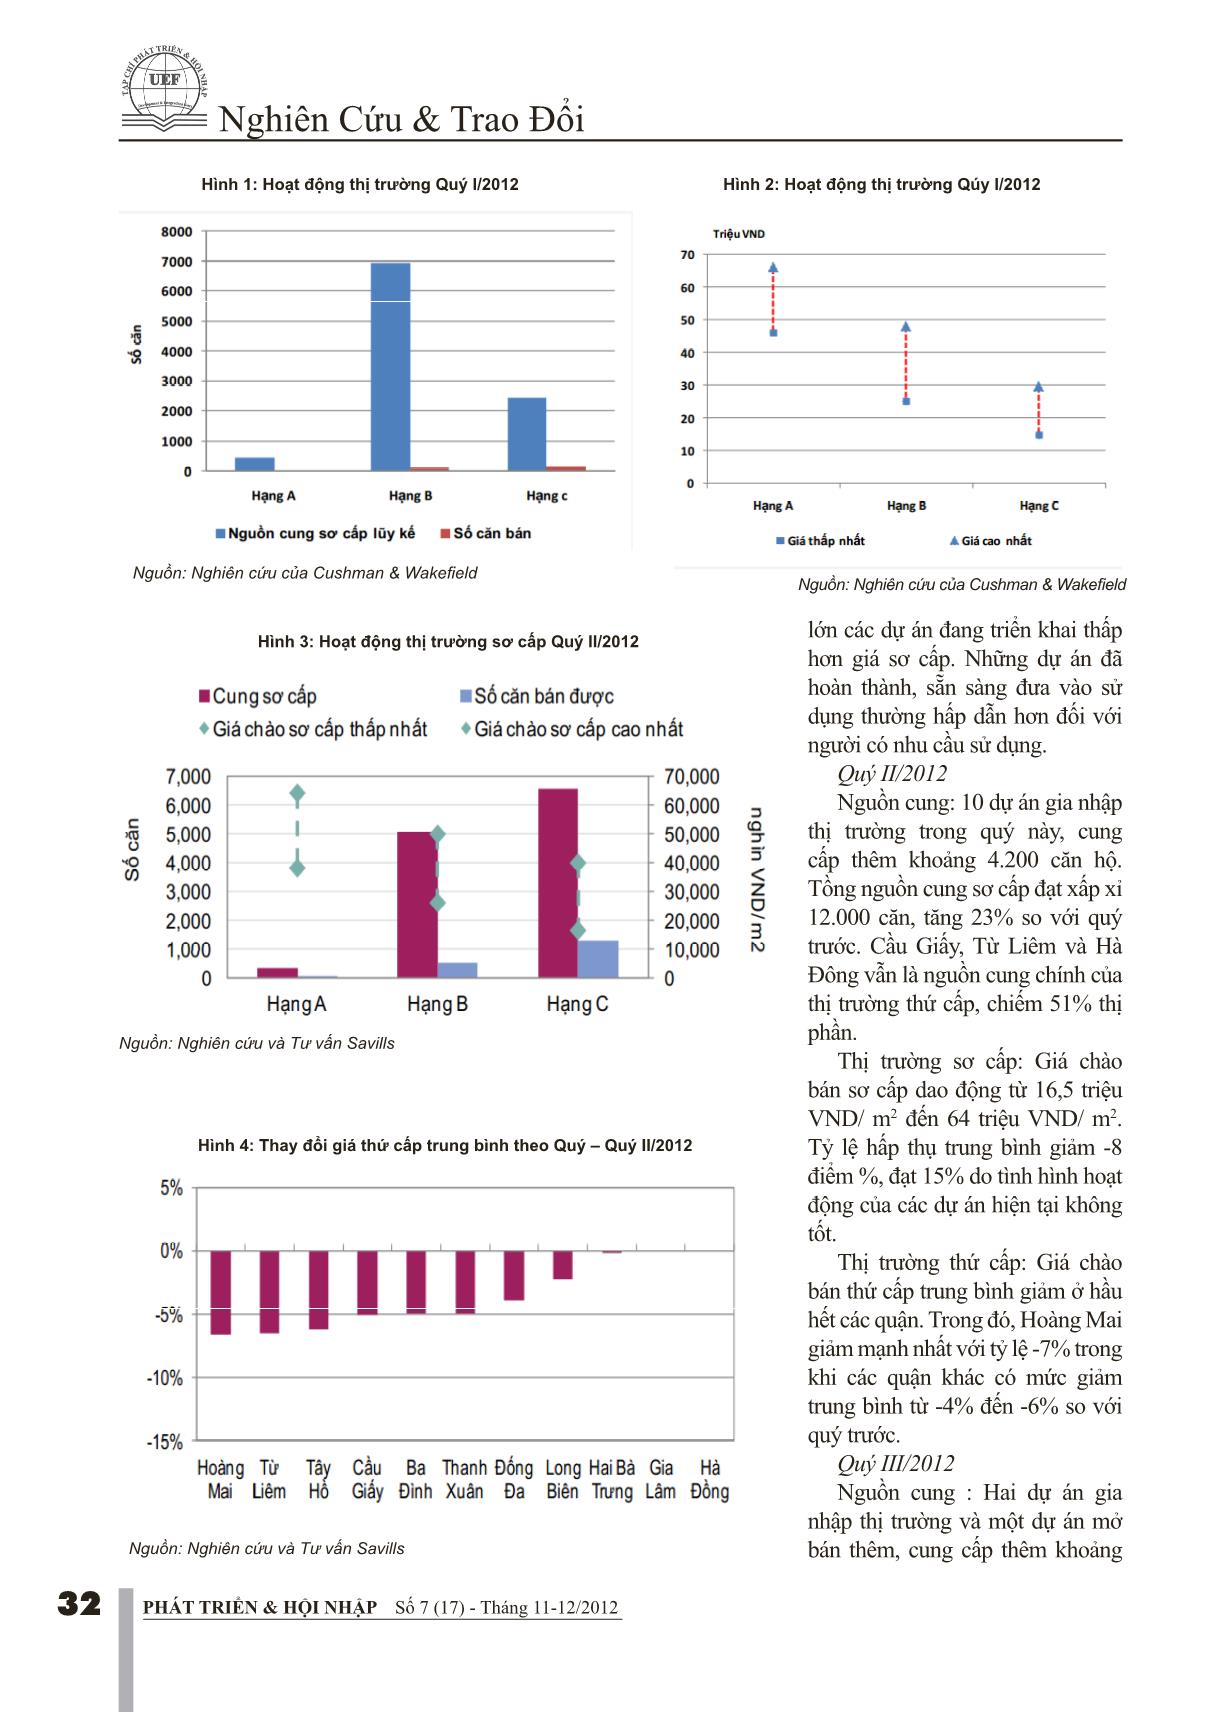 Tác động của chính sách vĩ mô 9 tháng đầu năm lên giá căn hộ Quý IV/2012 trang 2